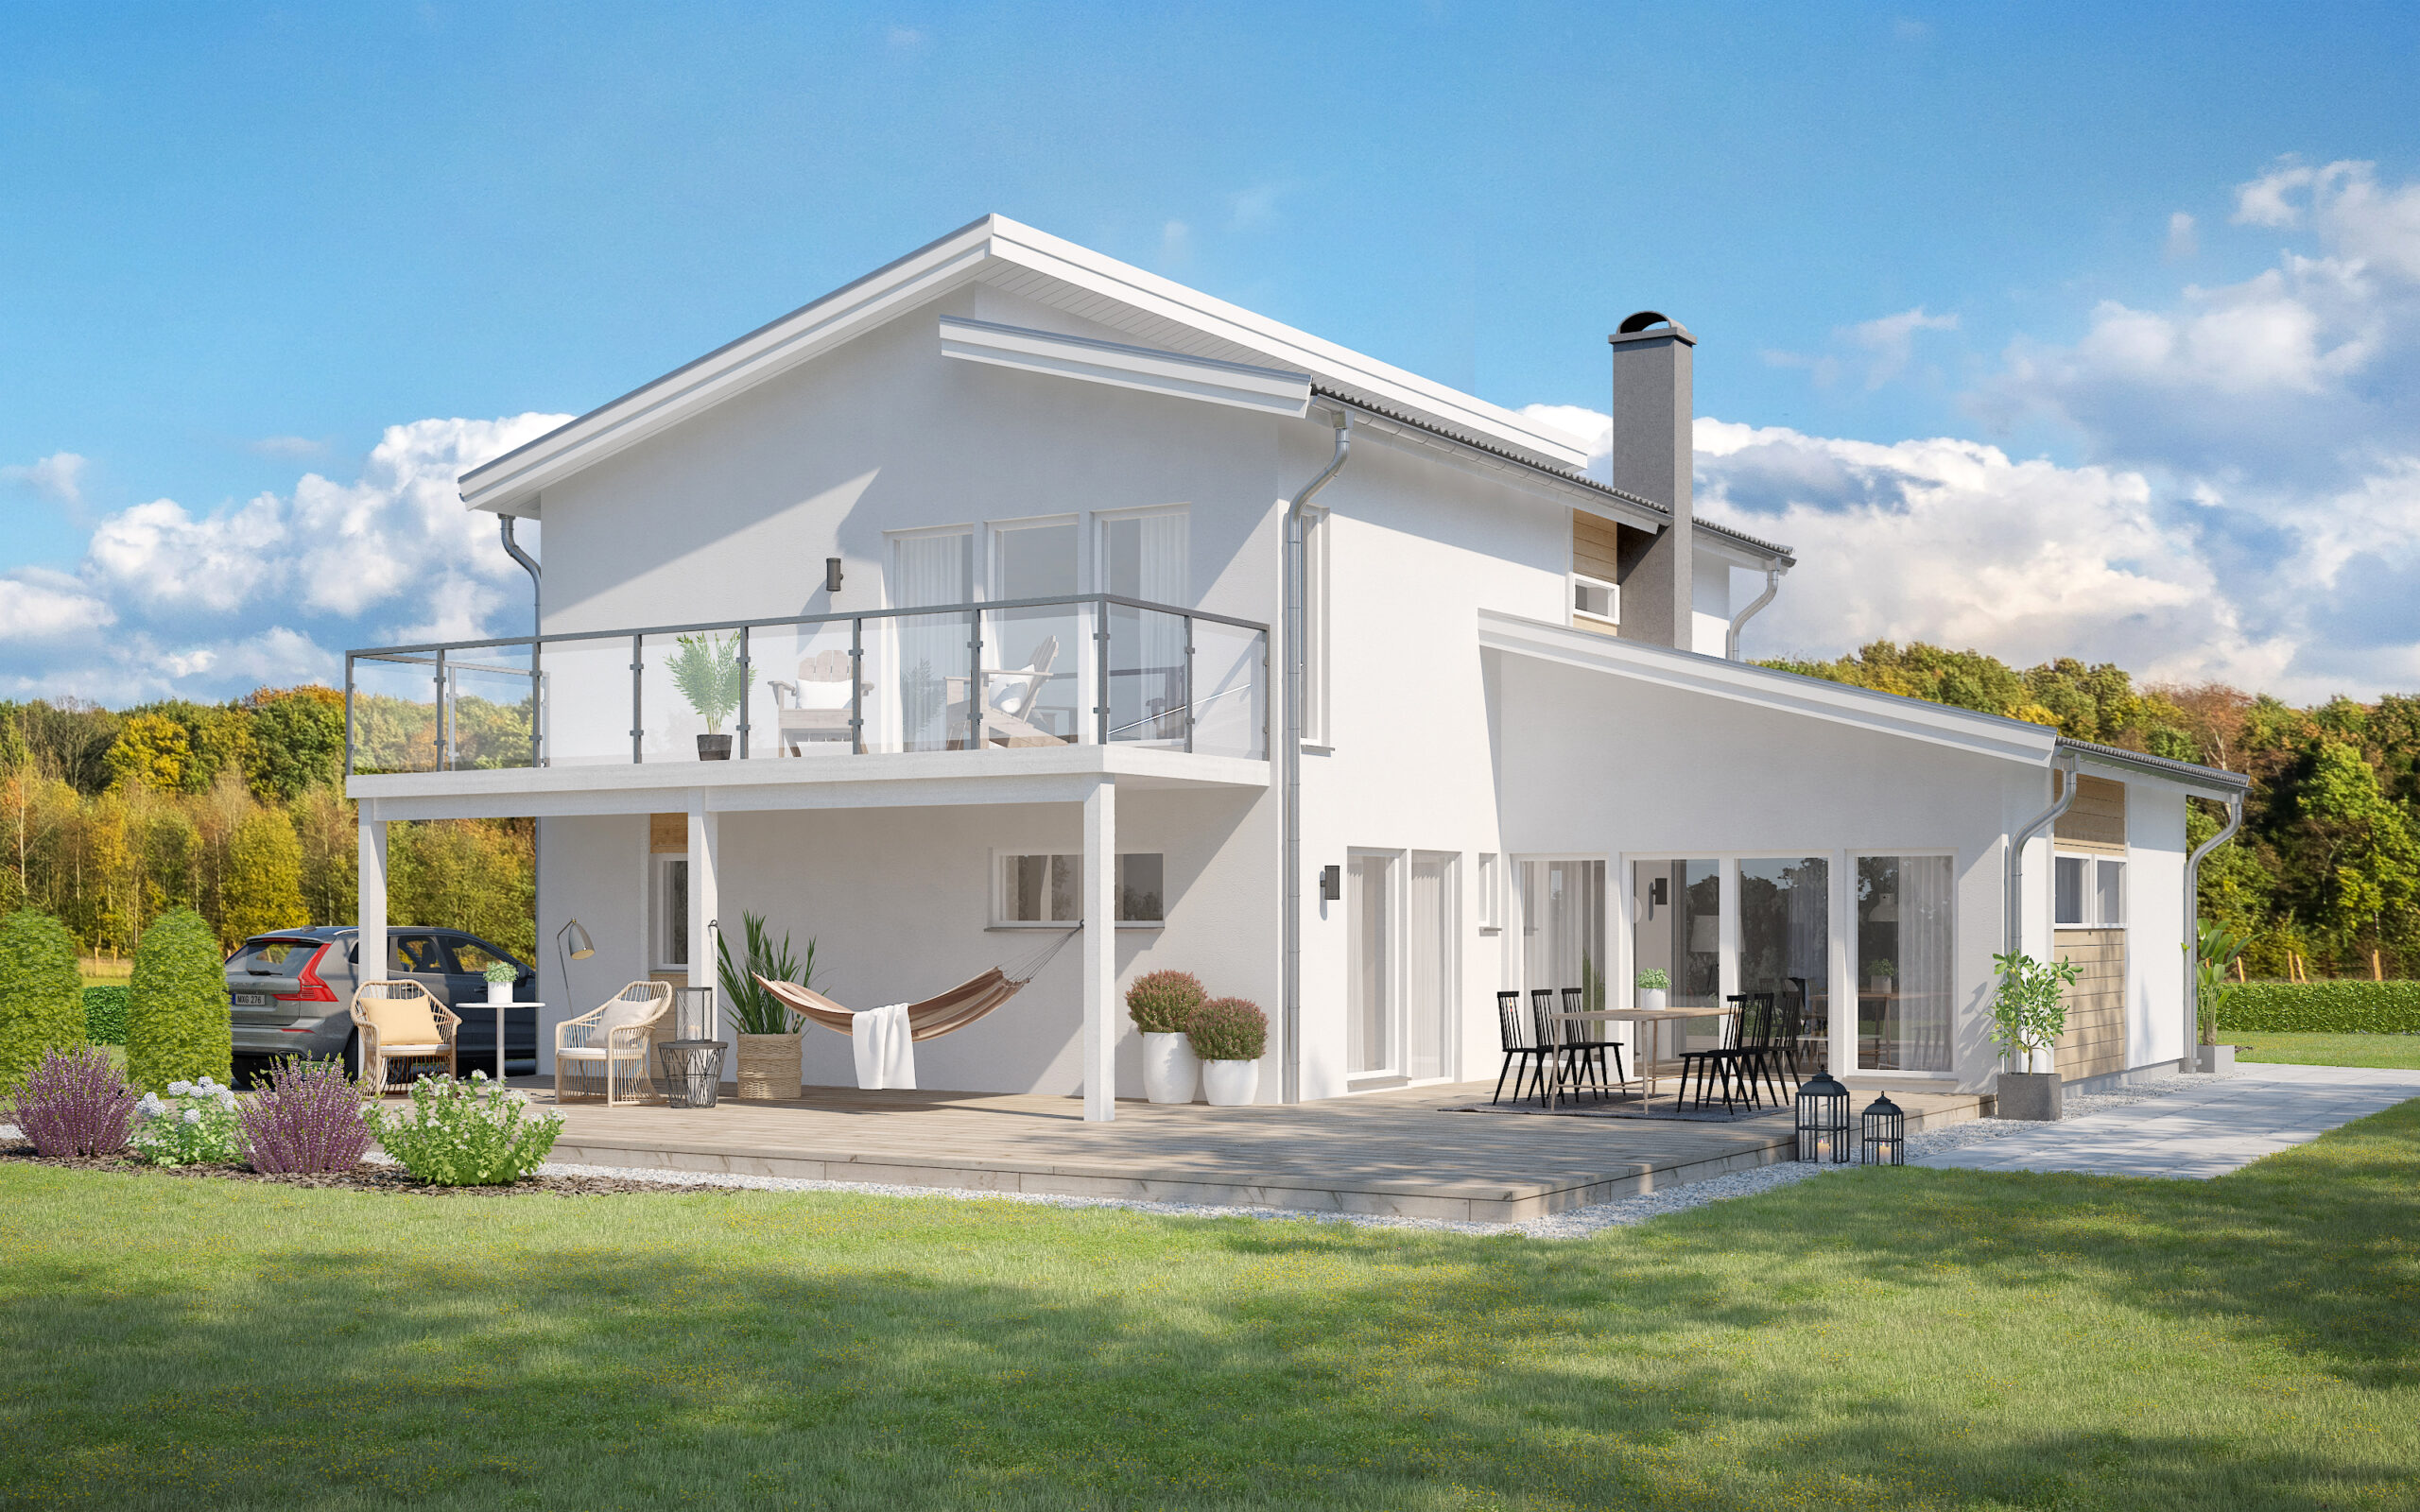 Villa Ljunghusen tvåplanshus i funkisstil med balkong, puts och panel